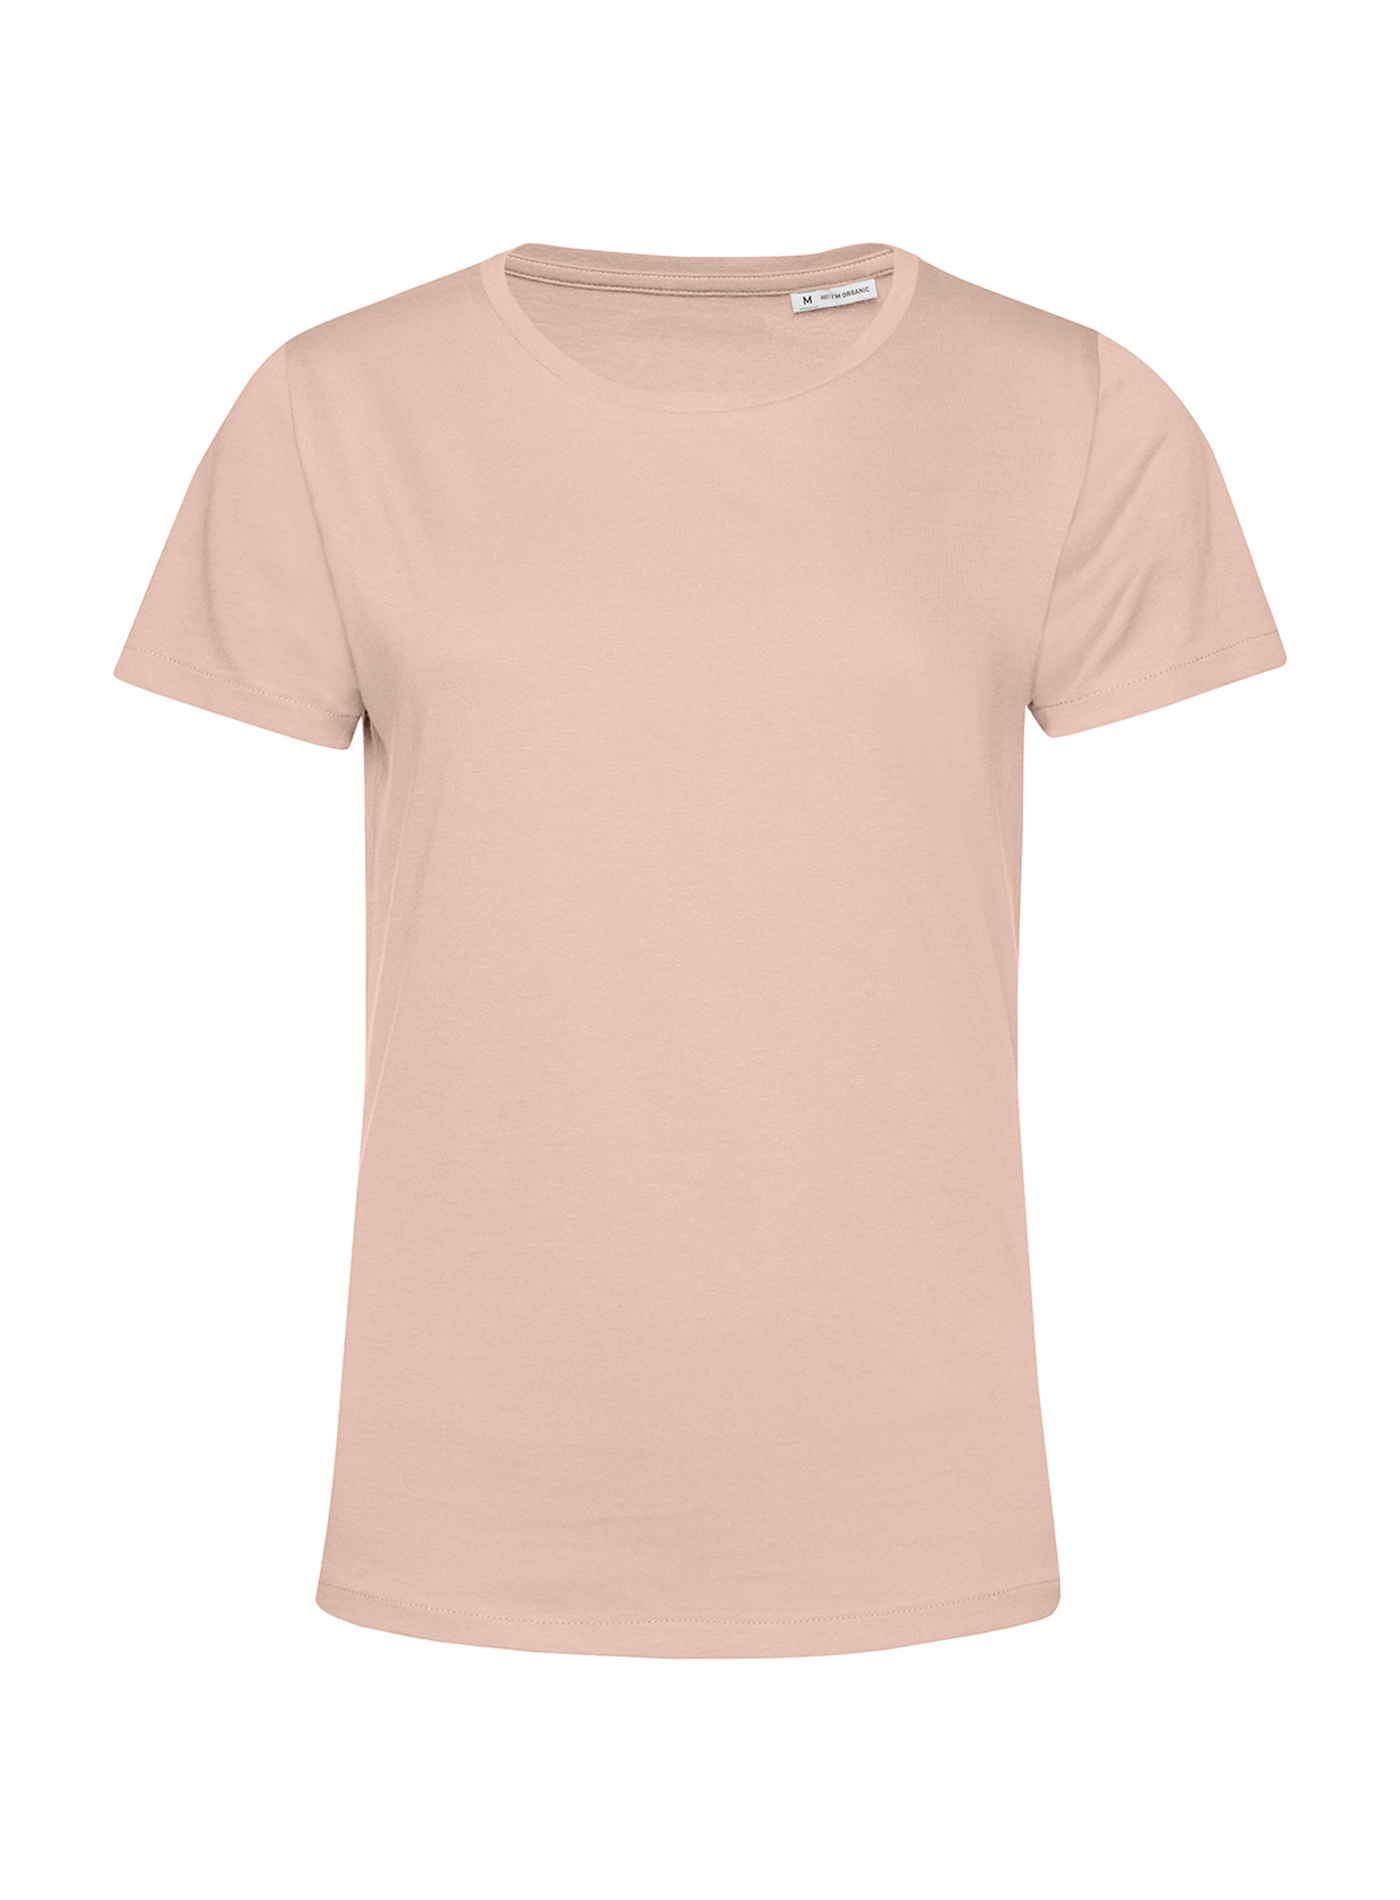 Dámské tričko B&C Collection Organic - Bledě růžová L